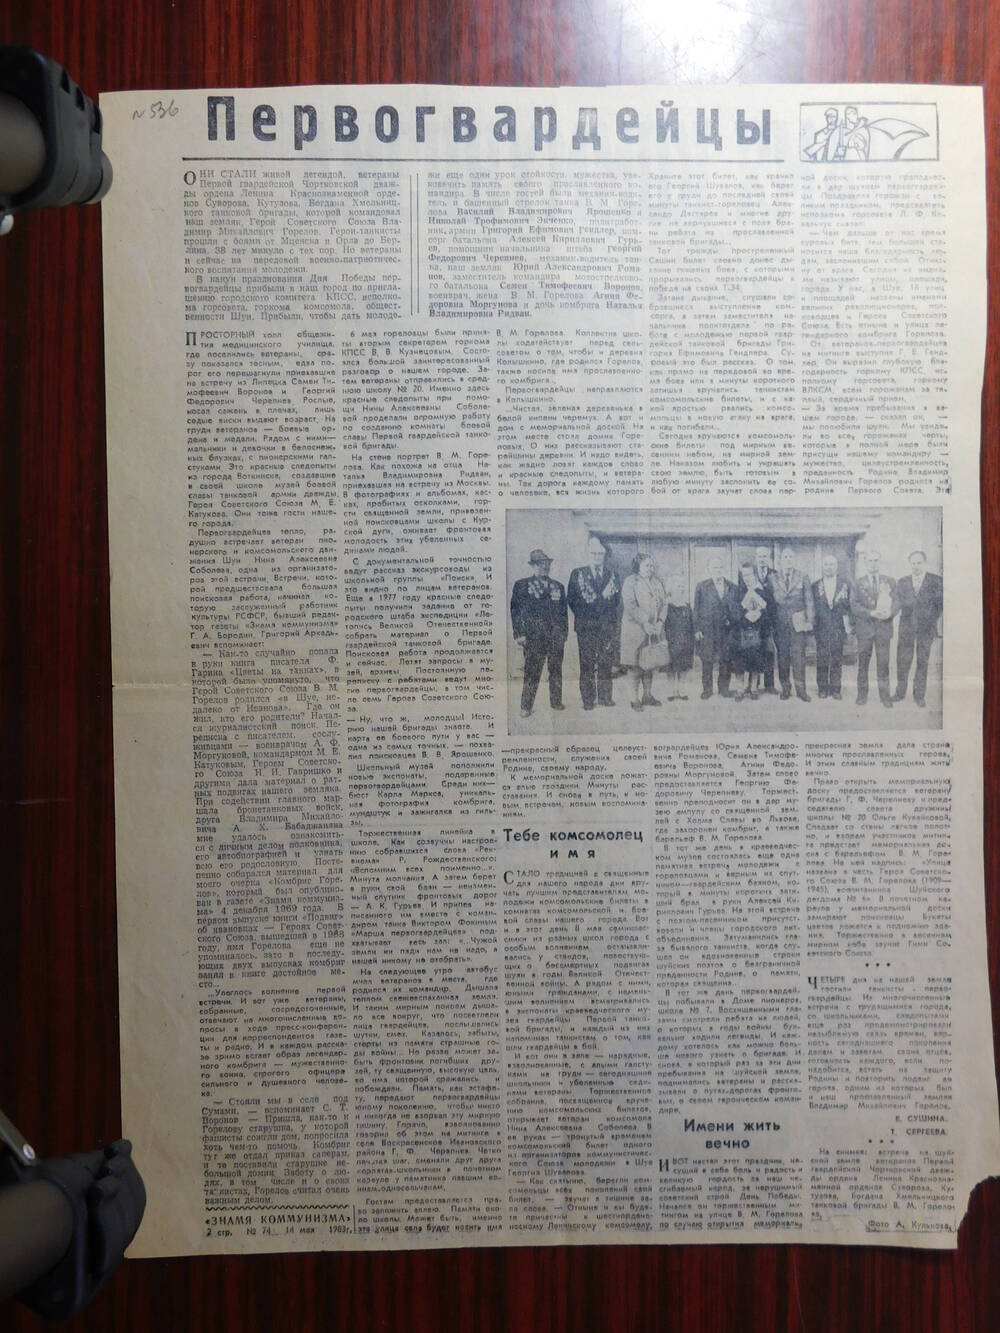 Фрагмент газеты Знамя коммунизма № 74 (13446) от 14.05.1983 г. Ст. Е. Струлева. Первопроходцы. Шуя.